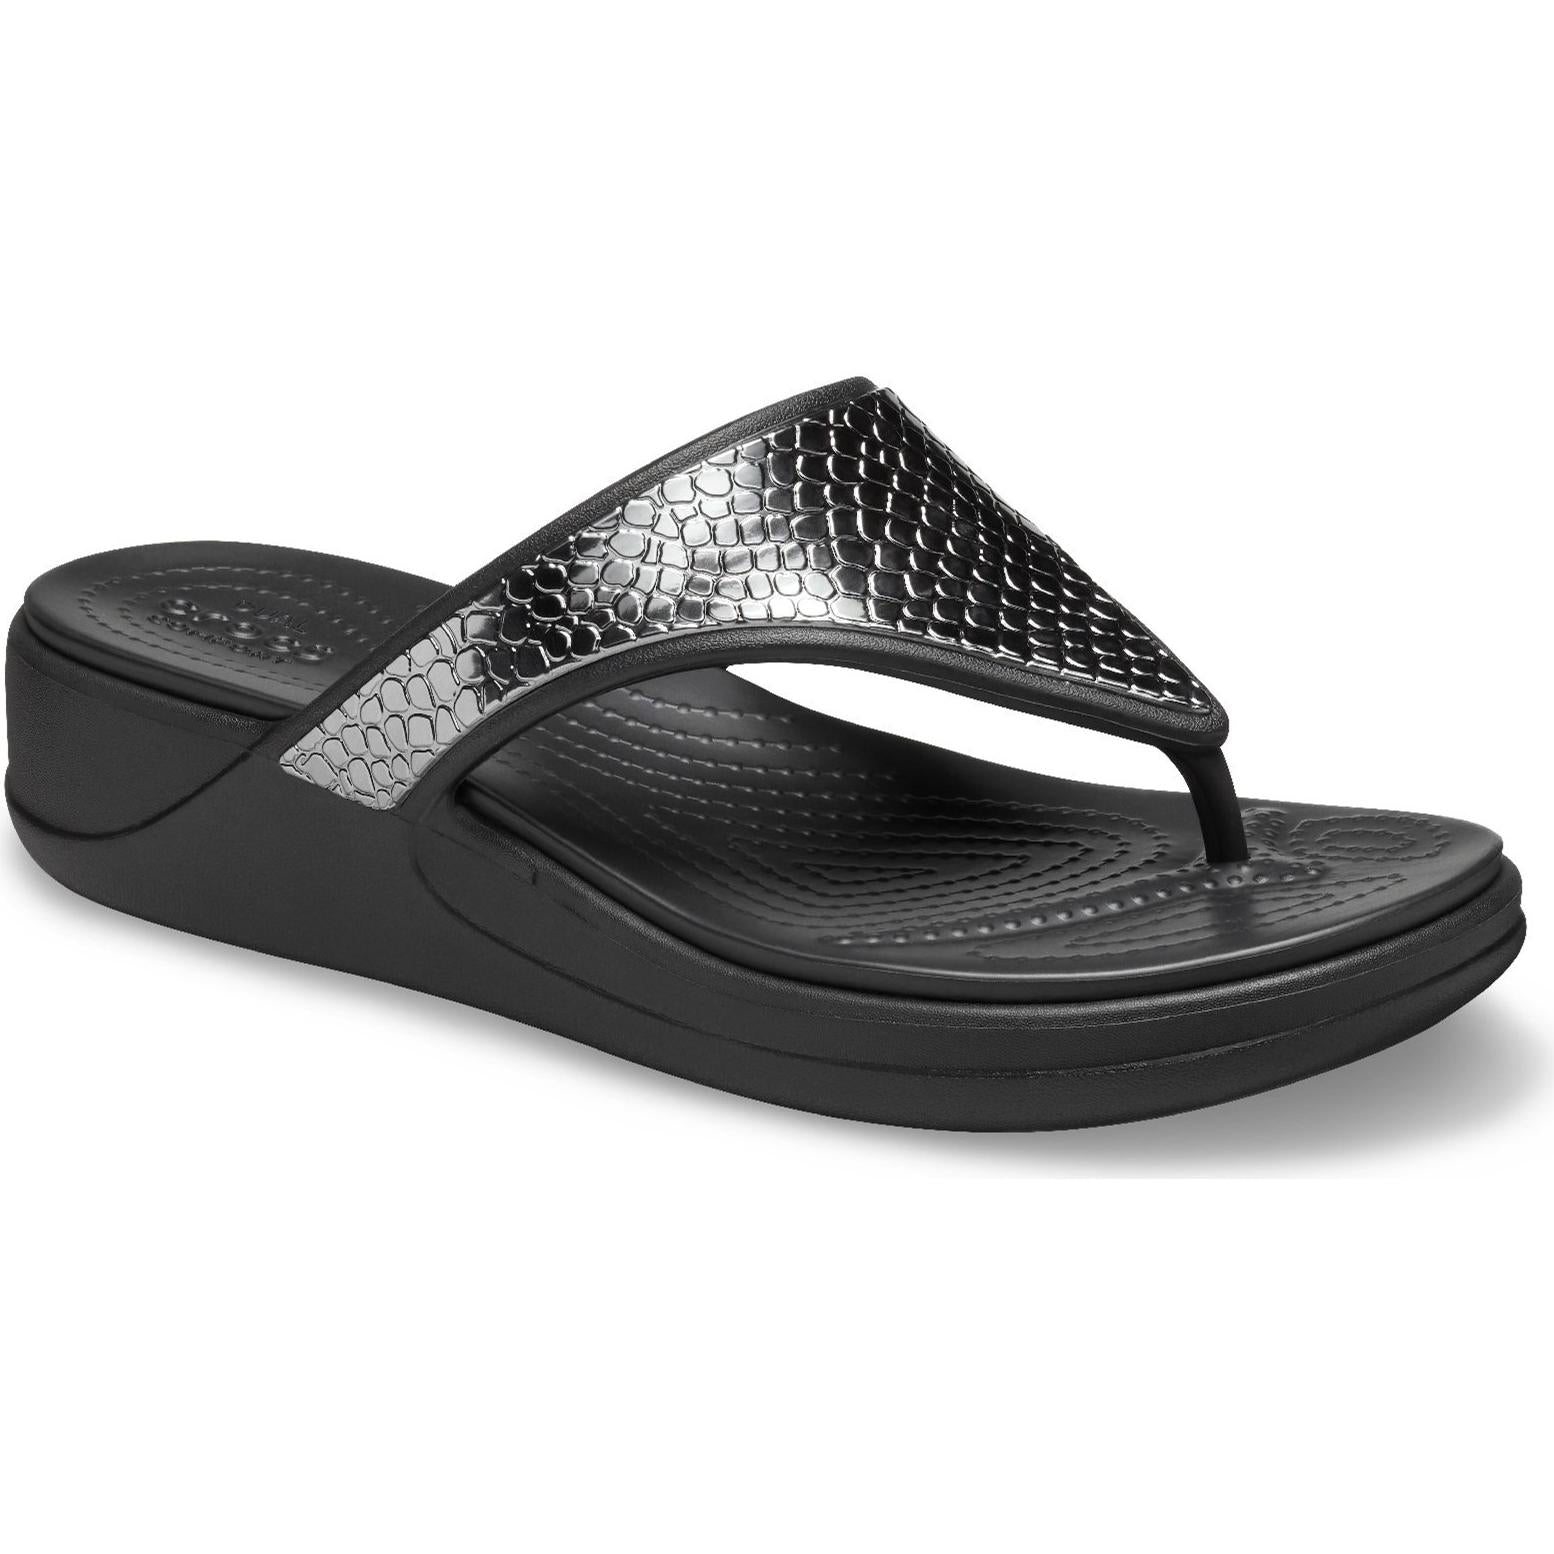 Crocs Monterey Metallic Wedge Flip Sandals